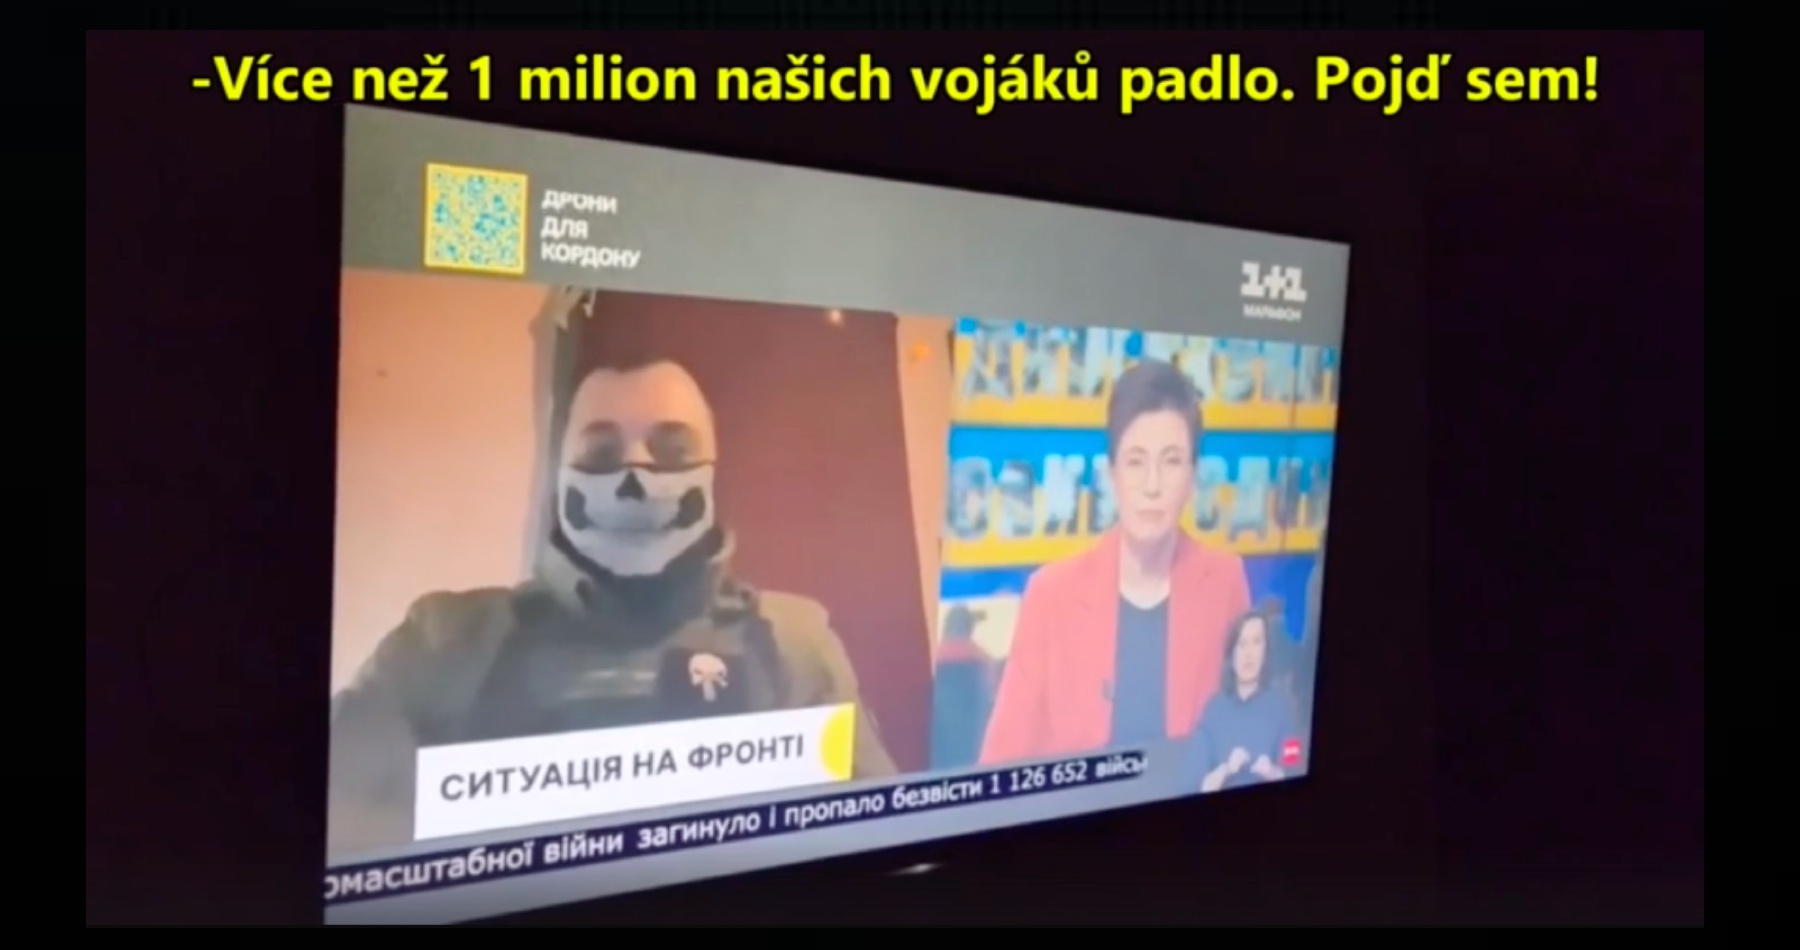 VIDEO: Ukrajinská televize odvysílala utajenou zprávu ministerstva obrany, že eviduje přes 1 milion zabitých a nezvěstných vojáků od začátku vypuknutí války na Ukrajině